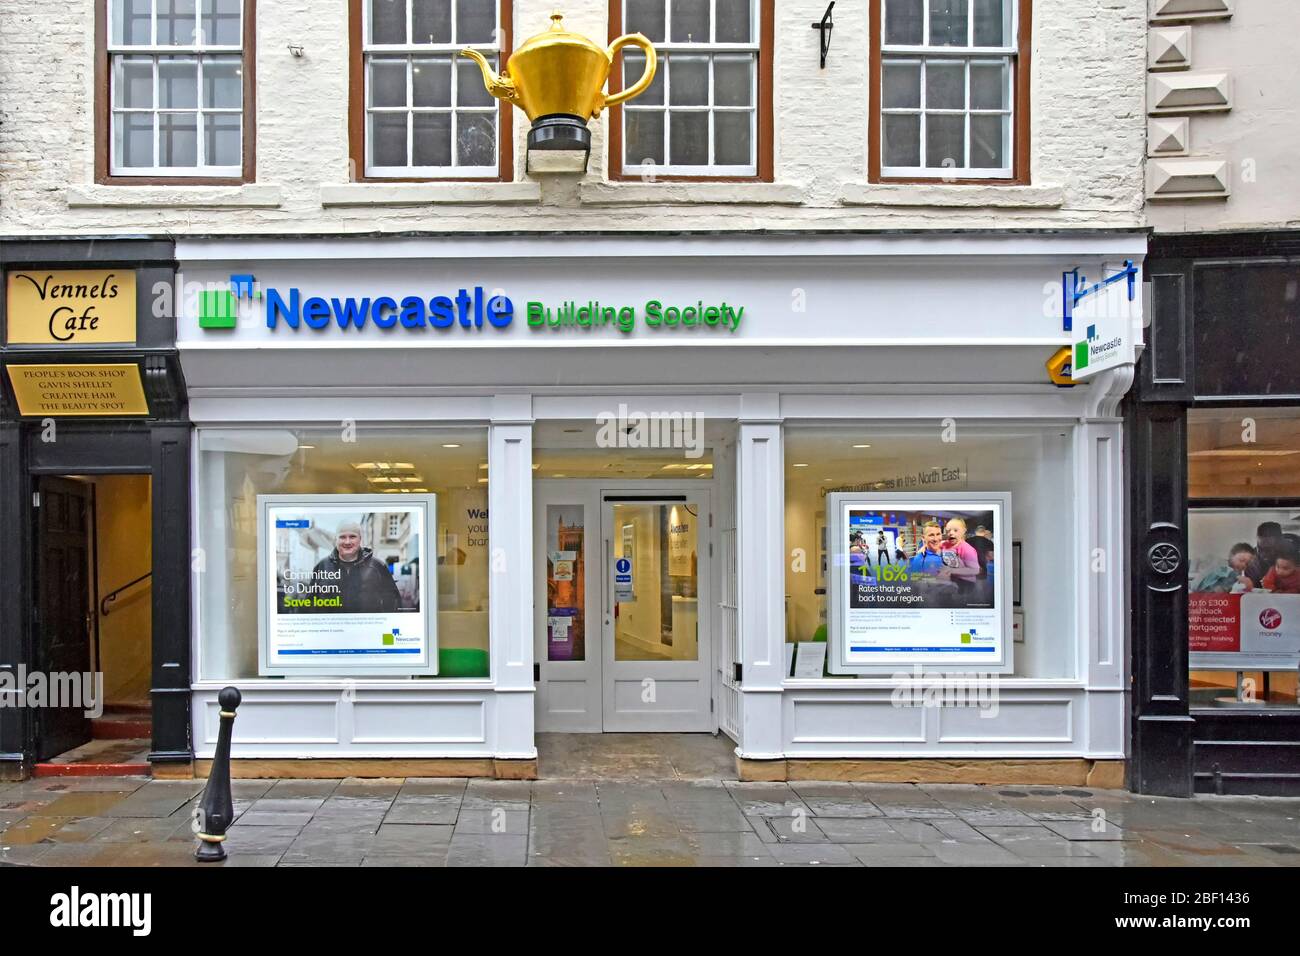 Storica teiera dorata sopra il negozio della Newcastle Building Society, sede del settore bancario e dei servizi finanziari nella contea di Durham, Inghilterra, Regno Unito Foto Stock